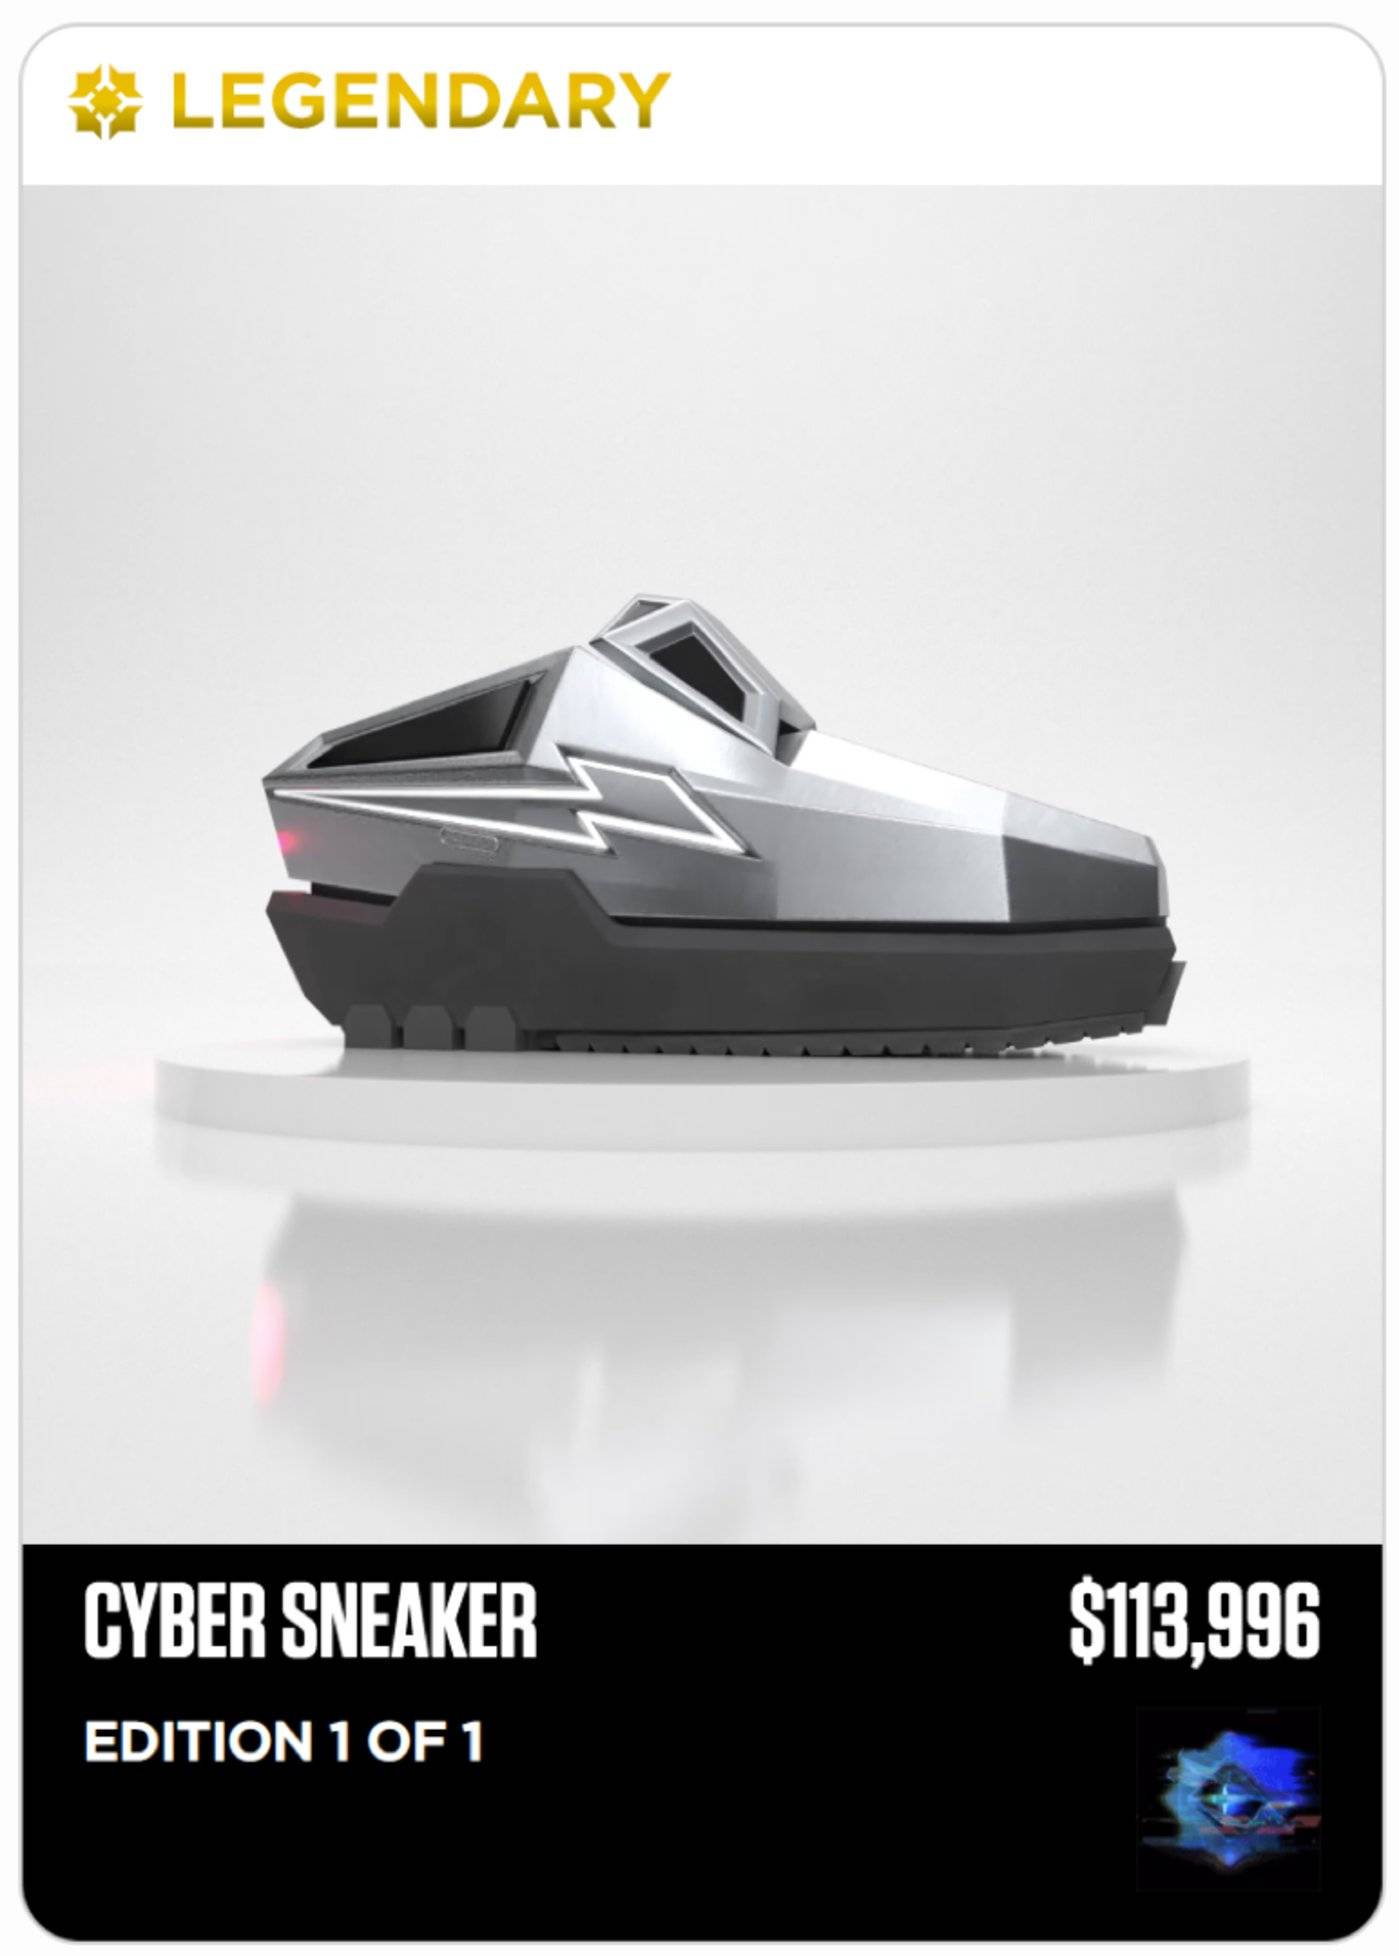 一双虚拟球鞋卖到5000美元，“真香”还是智商税？